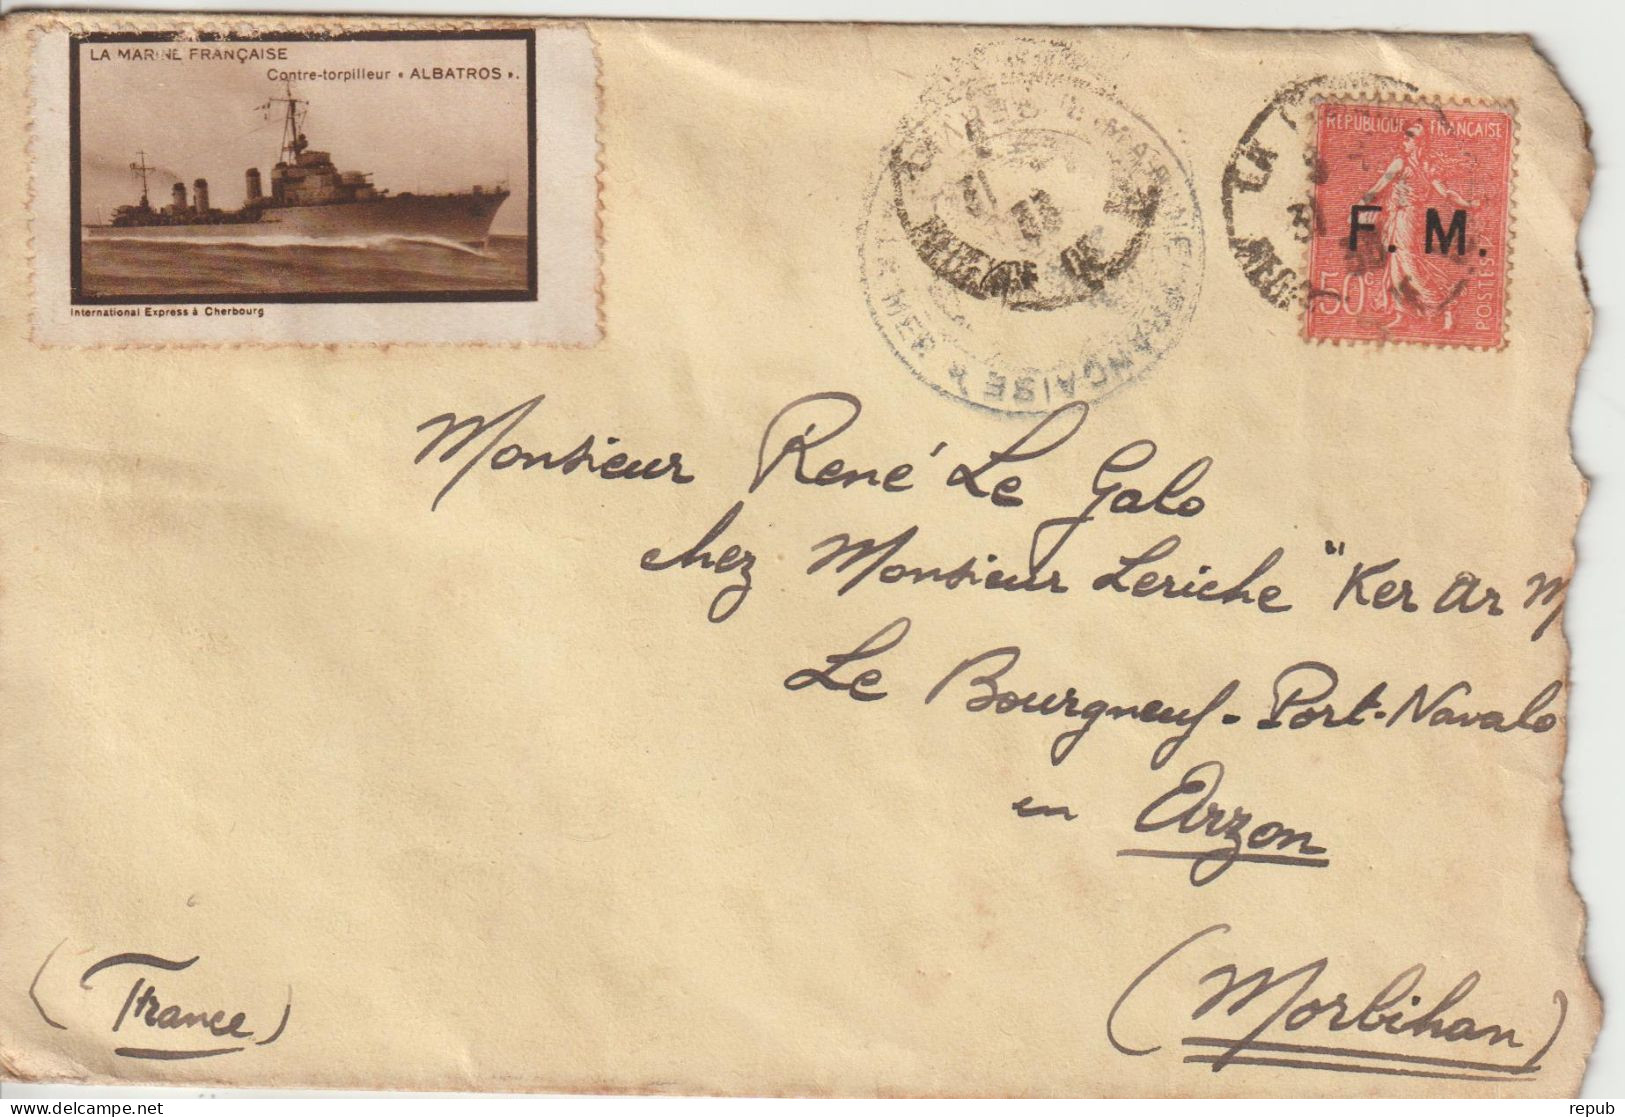 Lettre En Franchise FM 6 Marine Oblitération 1933 Avec Vignette Bateau Albatros - Military Postage Stamps